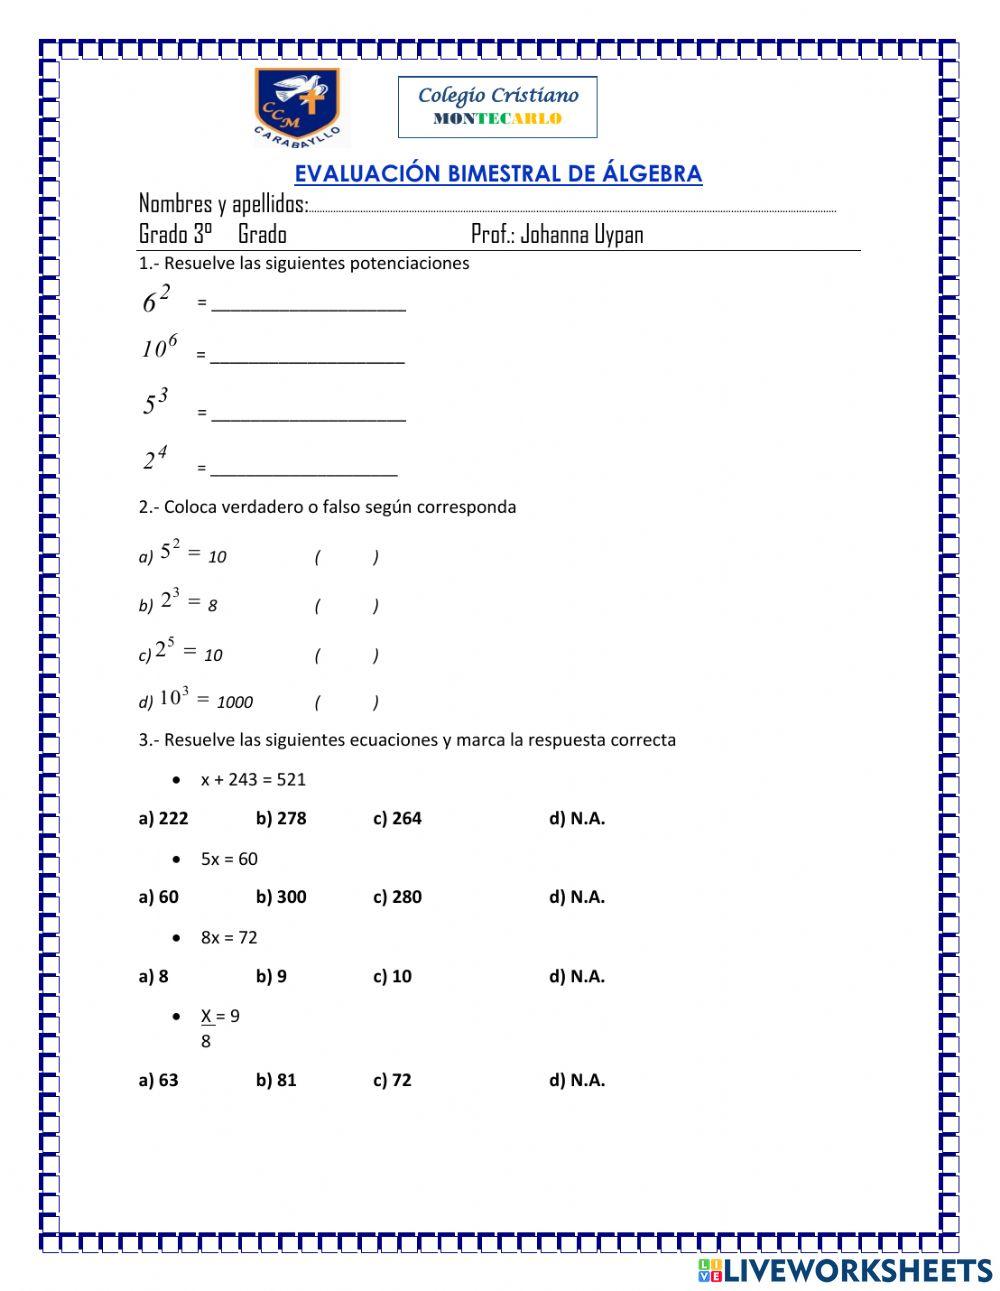 Evaluacion bimestral de algebra